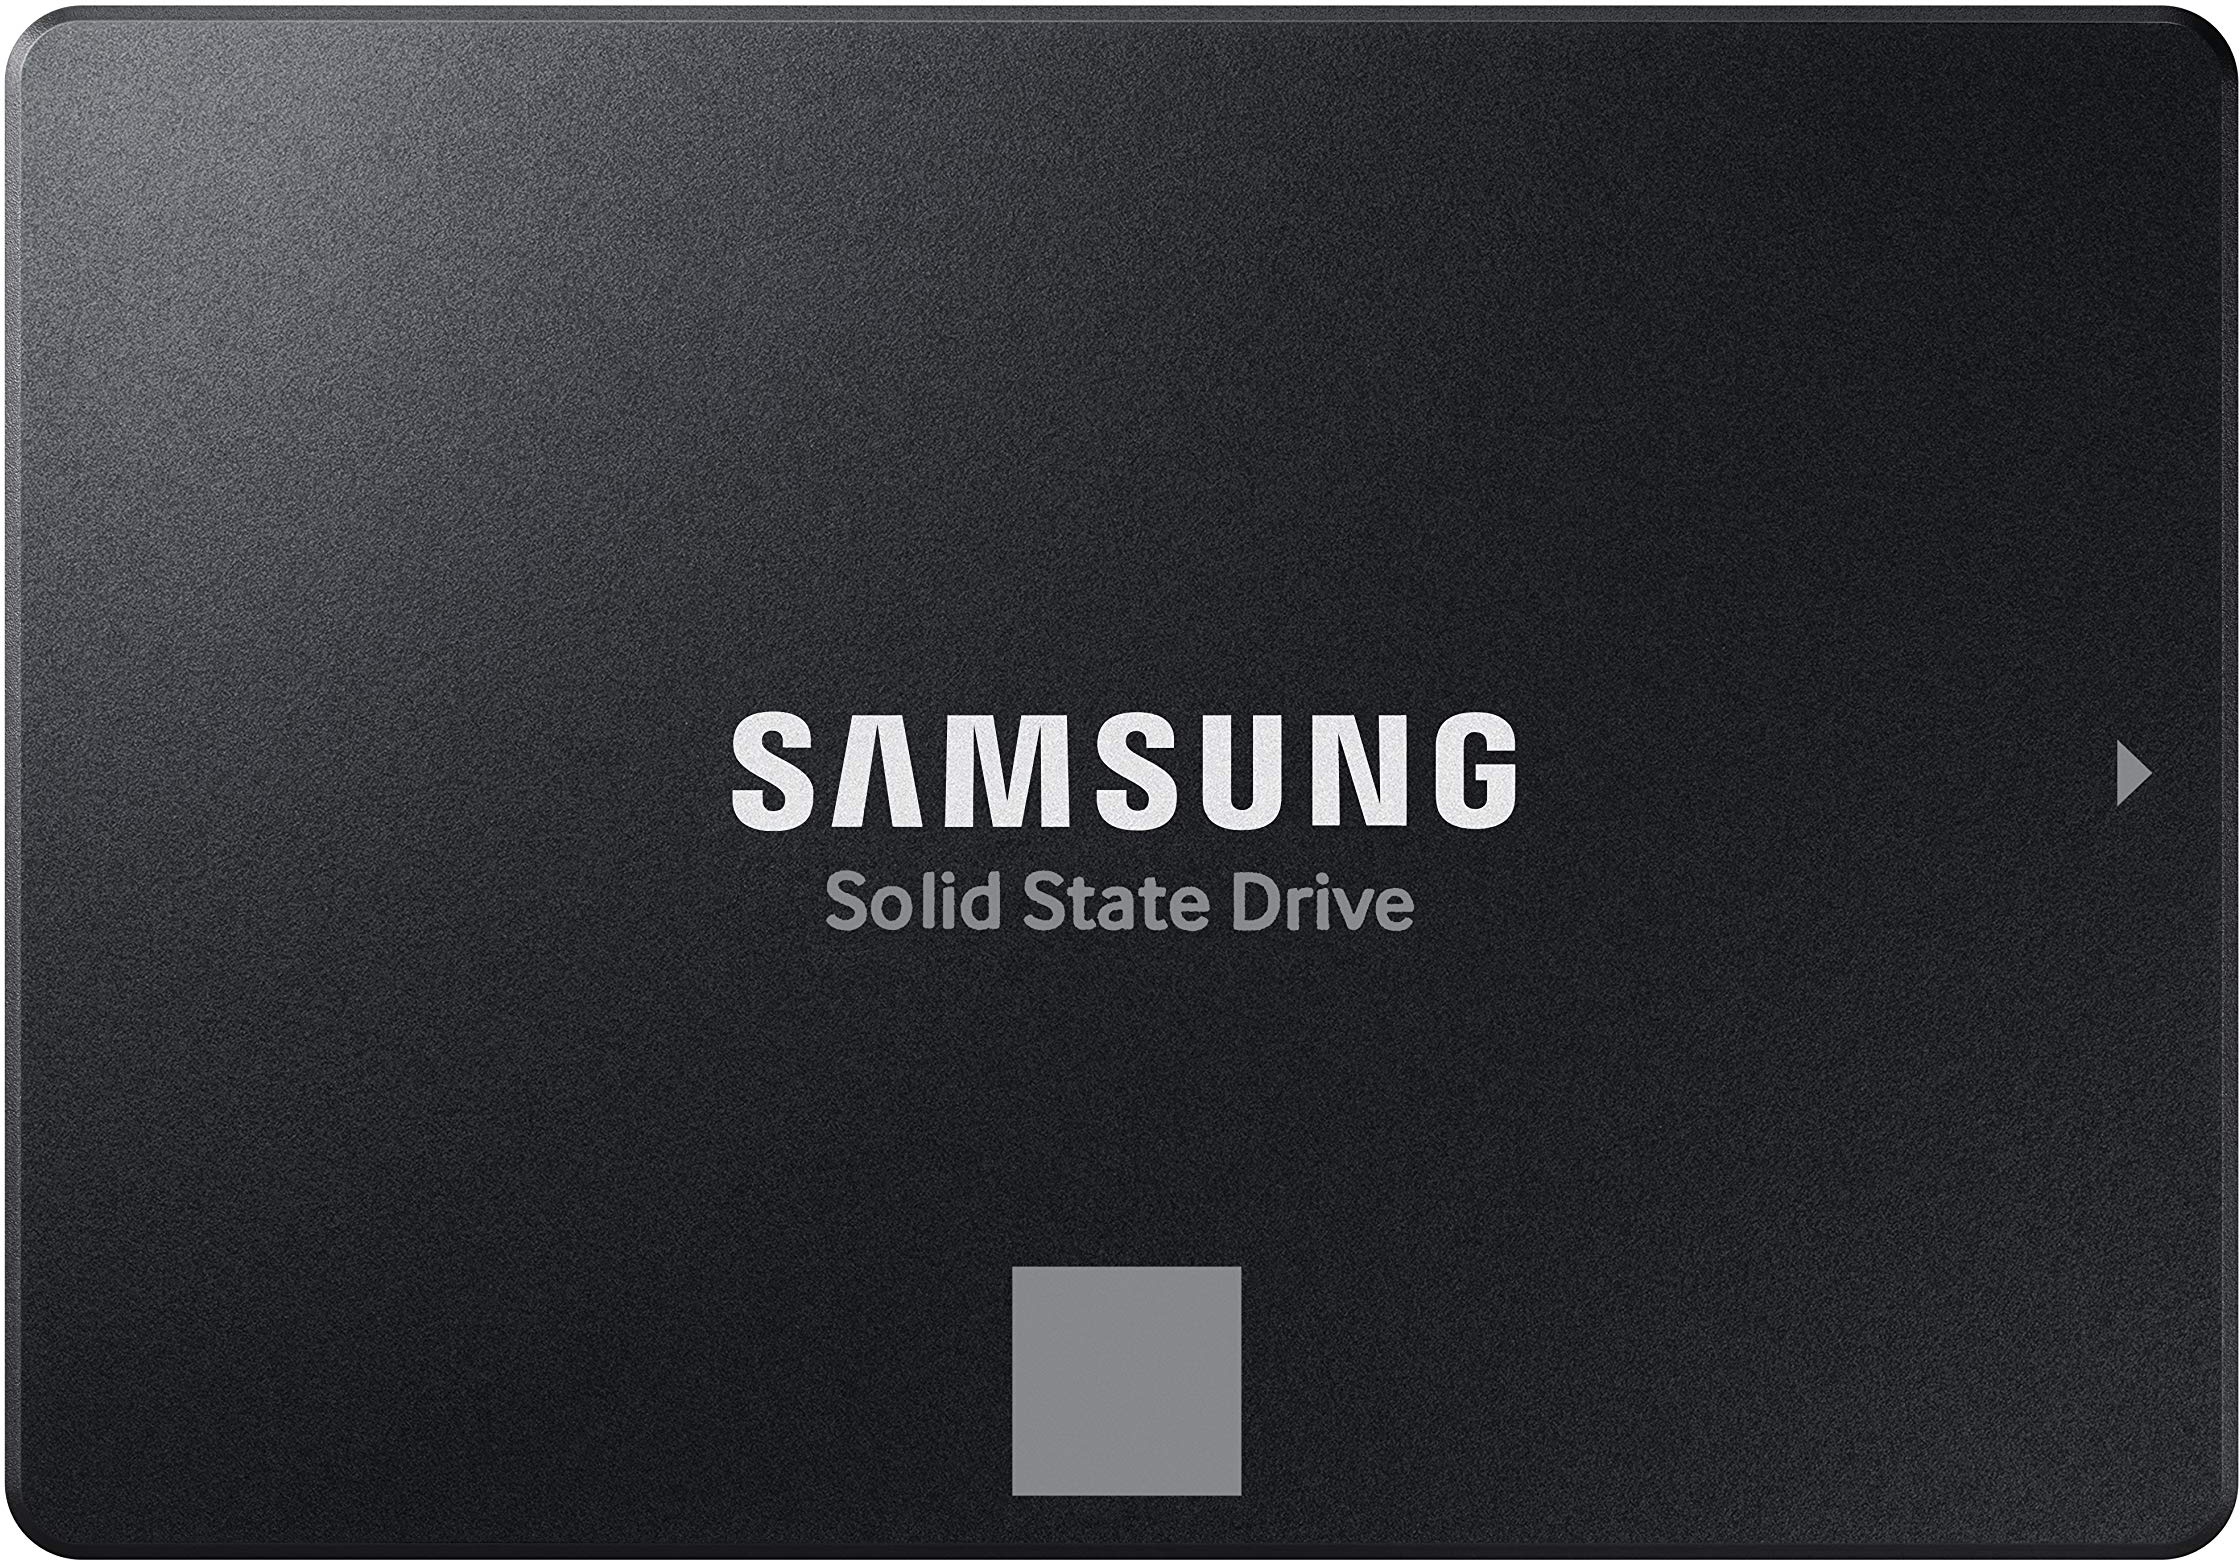 Samsung 870 EVO SATA III 2,5 Zoll SSD, 500 GB, 560 MB/s Lesen, 530 MB/s Schreiben, Interne SSD, Festplatte für schnelle Datenübertragung, MZ-77E500B/EU